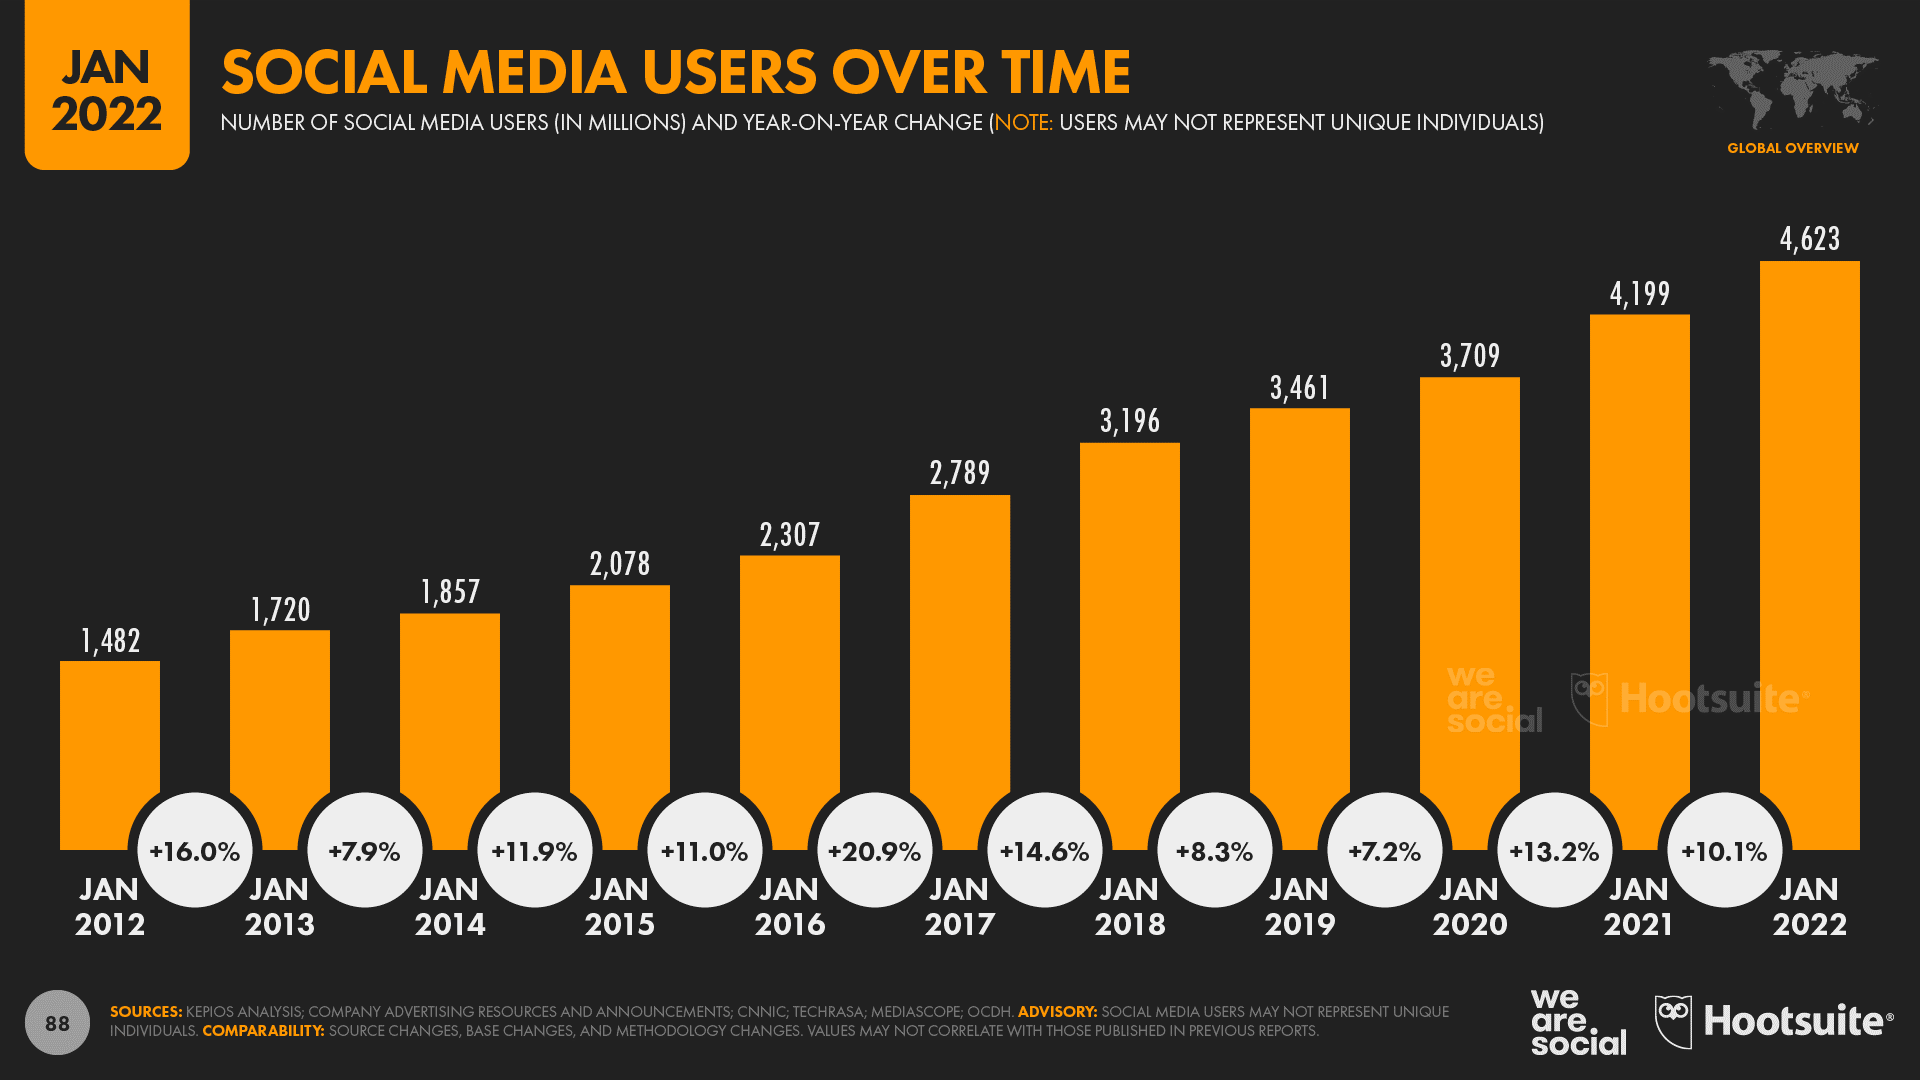 Social Media users 0ver time